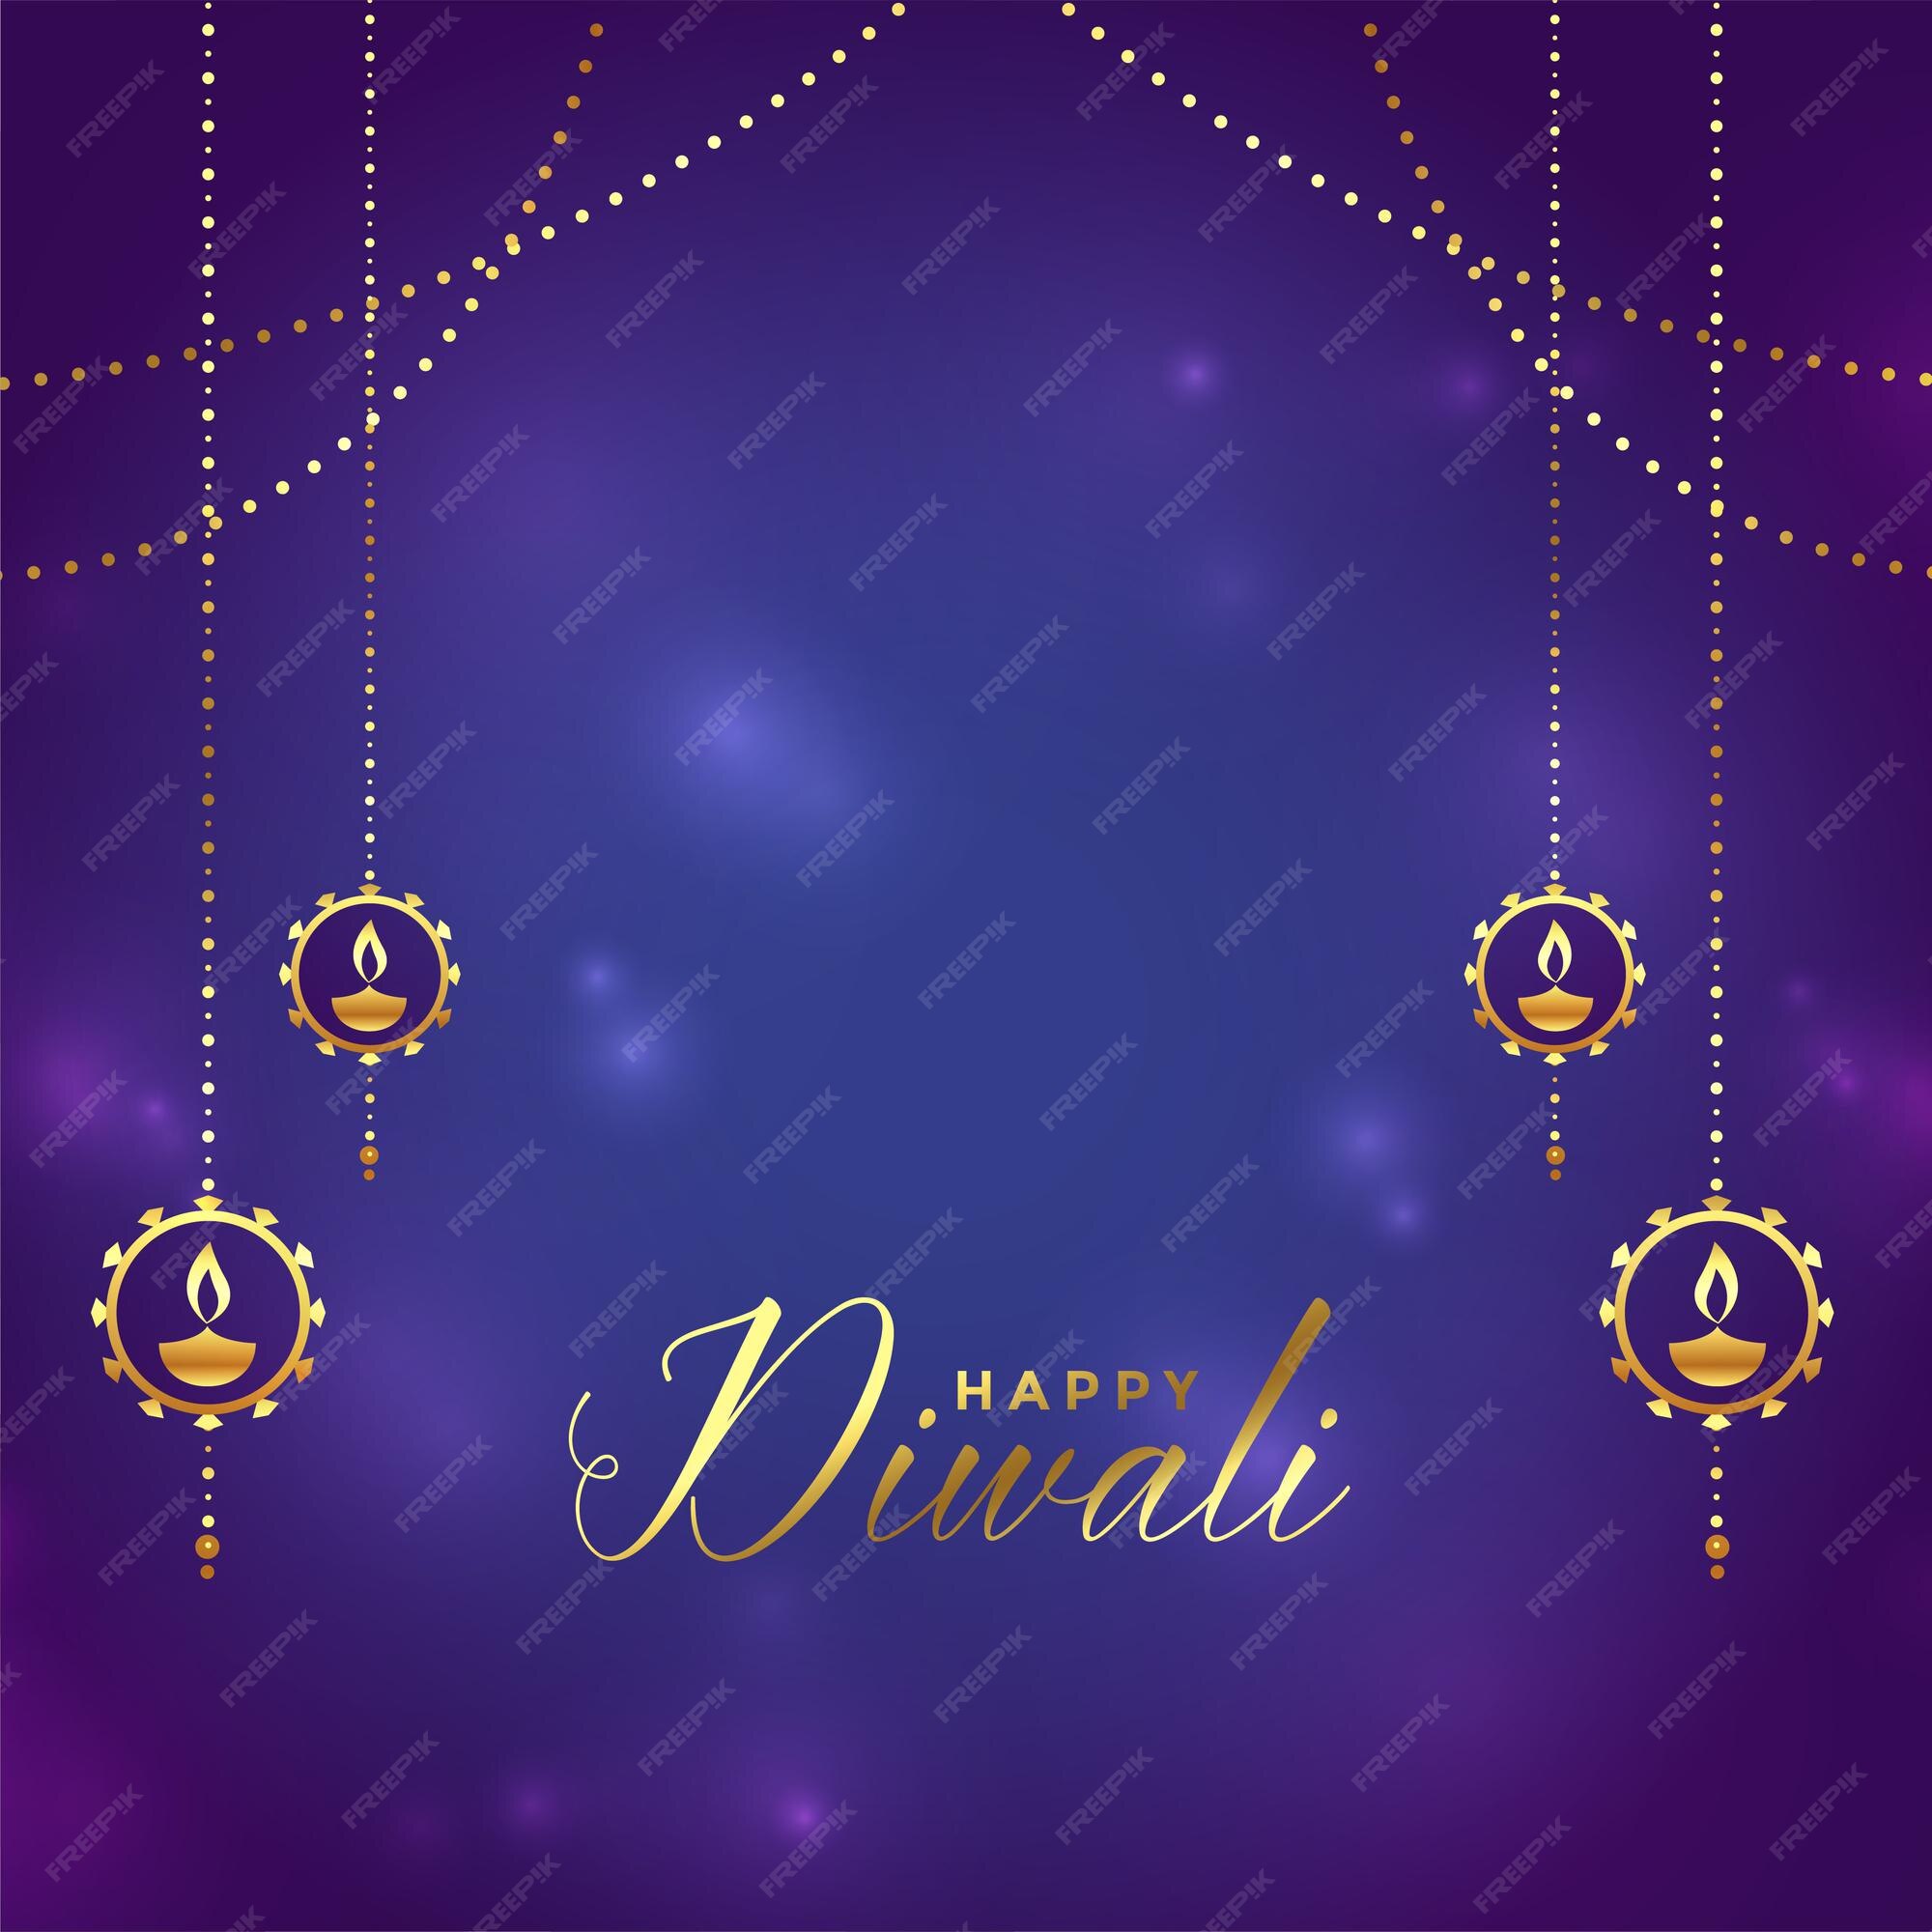 Hintergrund Diwali màu tím, sáng bóng, hoàng kim sẽ khiến bạn thấy ngỡ ngàng. Với những điểm sáng trên nền tối của màn đêm, màu tím quý phái kết hợp với sự sáng bóng của hoàng kim, bạn sẽ được thôi mái chiêm ngưỡng và cảm nhận sự trọn vẹn của Lễ hội Diwali. Hãy thưởng thức hình ảnh liên quan để khám phá thế giới rực rỡ của Lễ hội Diwali.